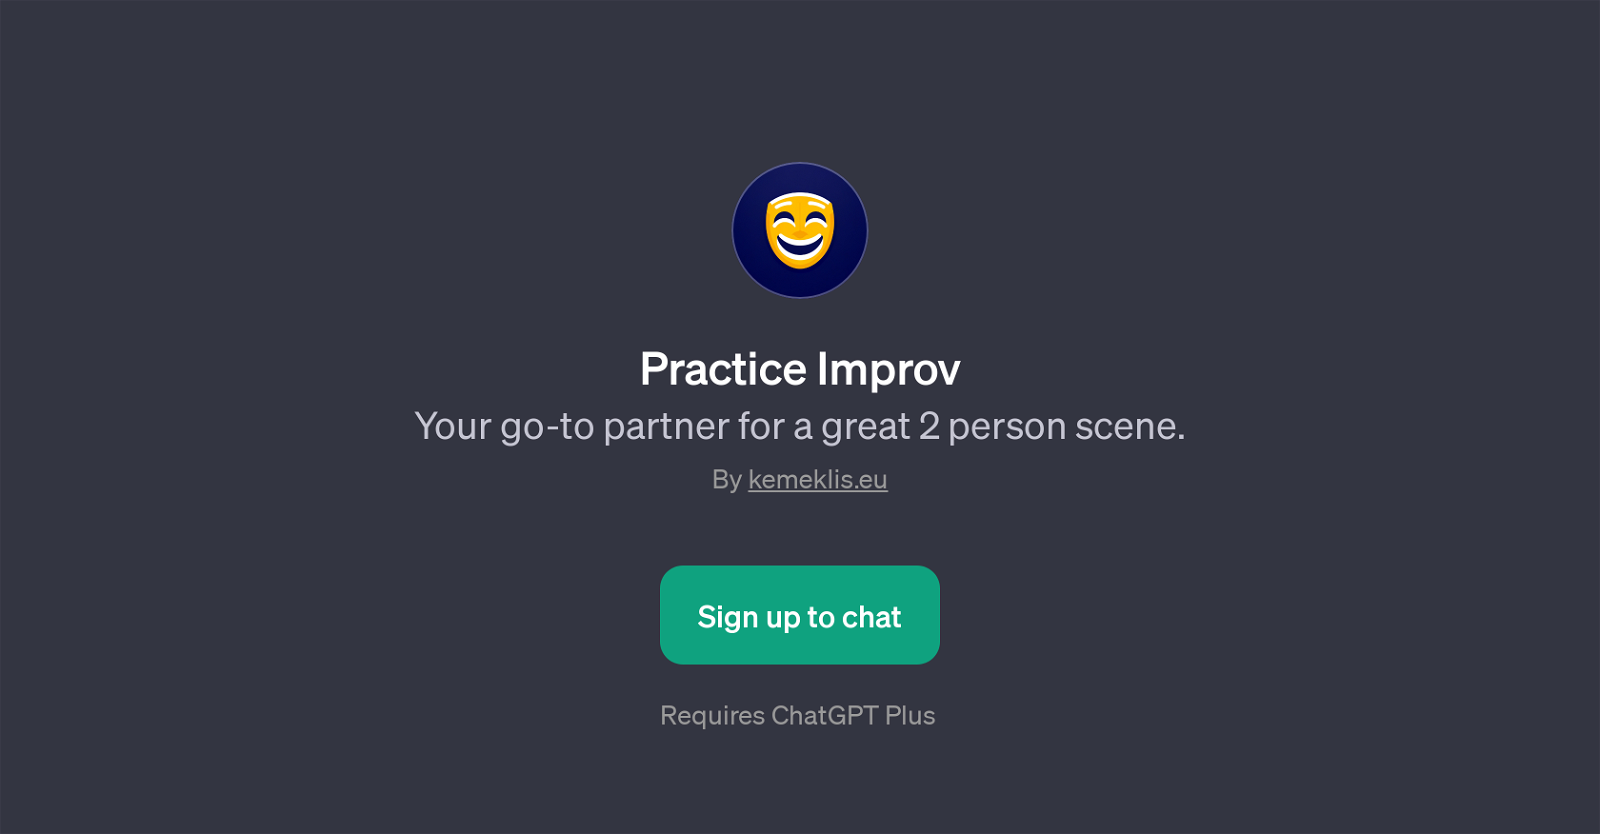 Practice Improv website